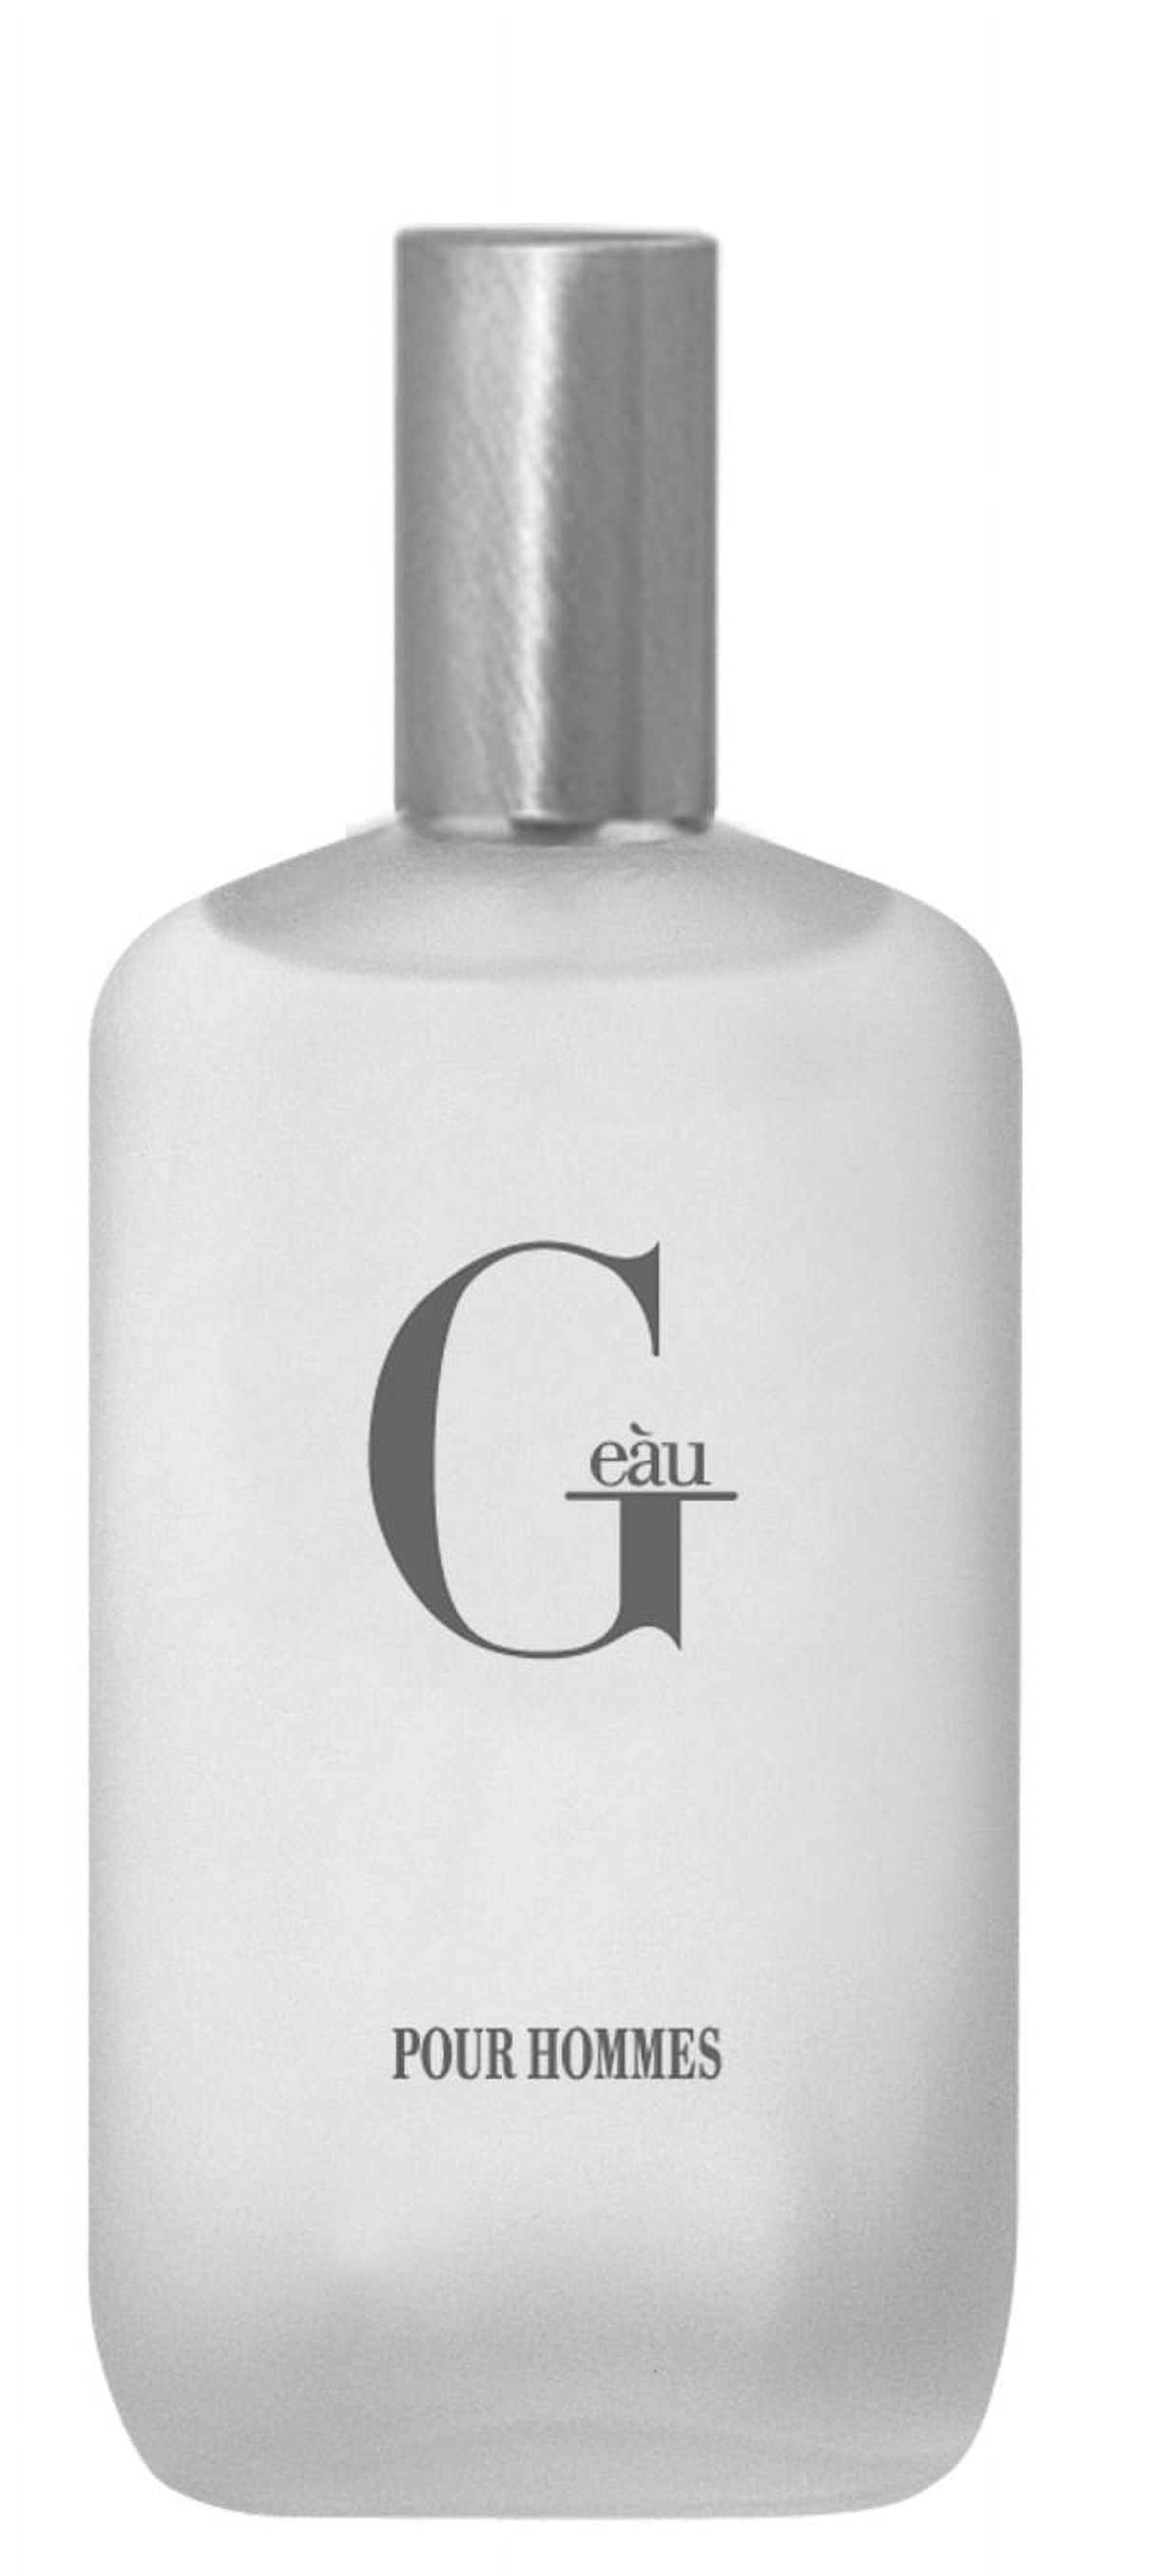 Parfums Belcam G Eau Eau De Toilette, Cologne for Men, 3.4 Fl oz - image 1 of 4